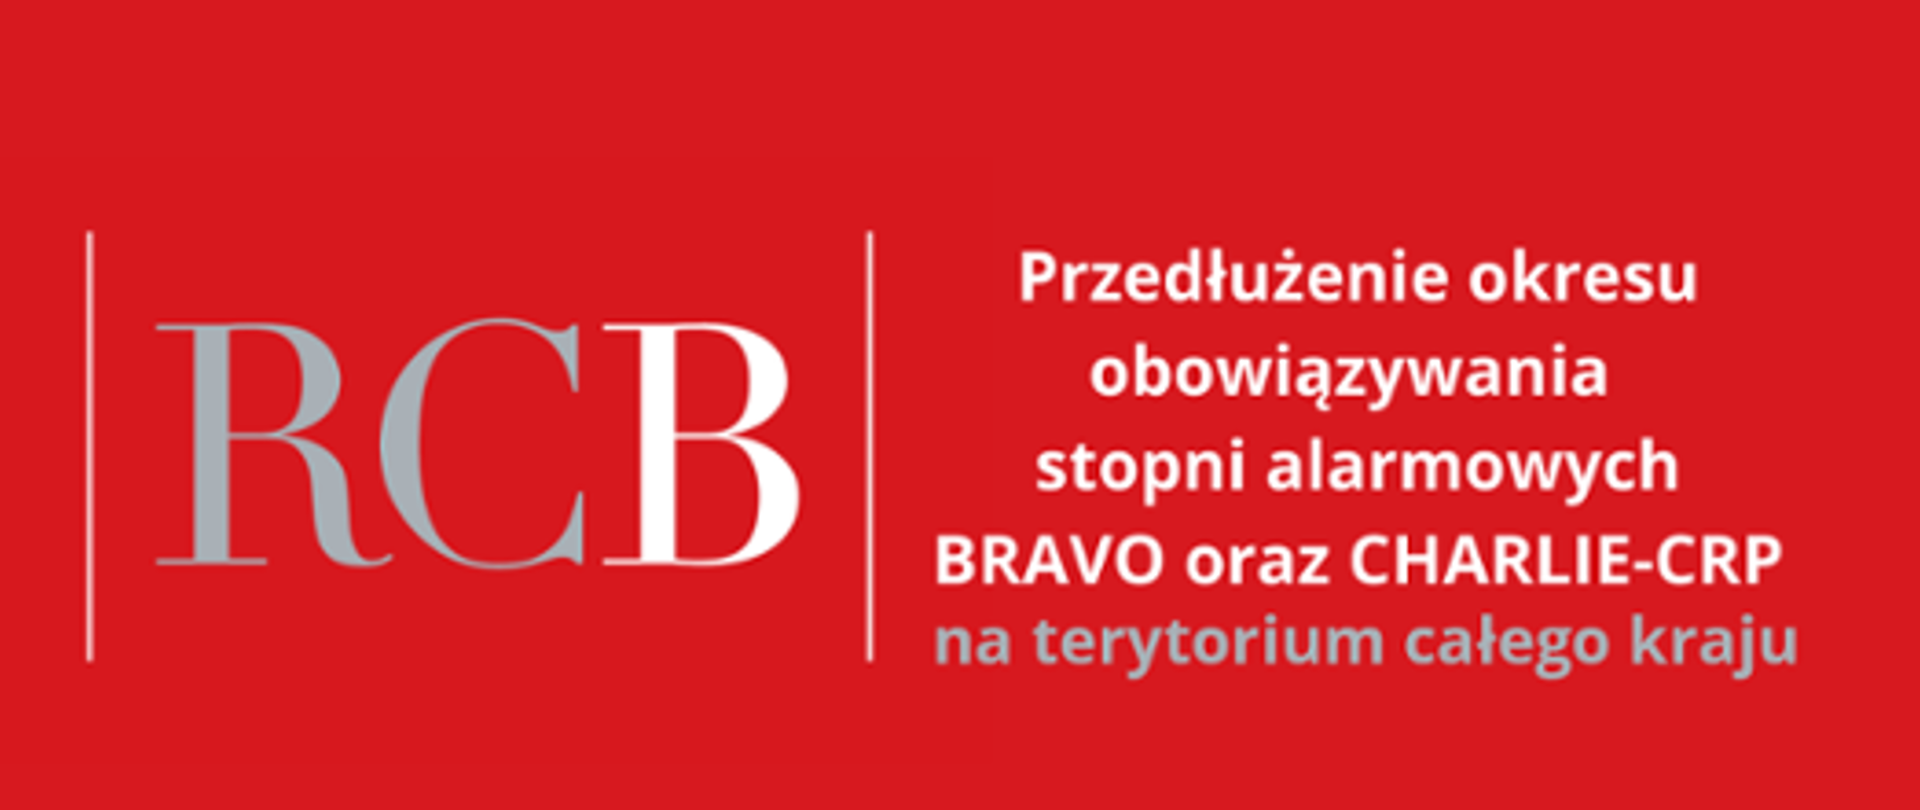 Baner białe litery na czerwonym tle, po lewej stronie duży litery RCB, po prawej oddzielony pionową kreską tekst Przedłużenie okresu obowiązywania stopni alarmowych BRAVO oraz CHARLIE_CRP na terytorium całego kraju